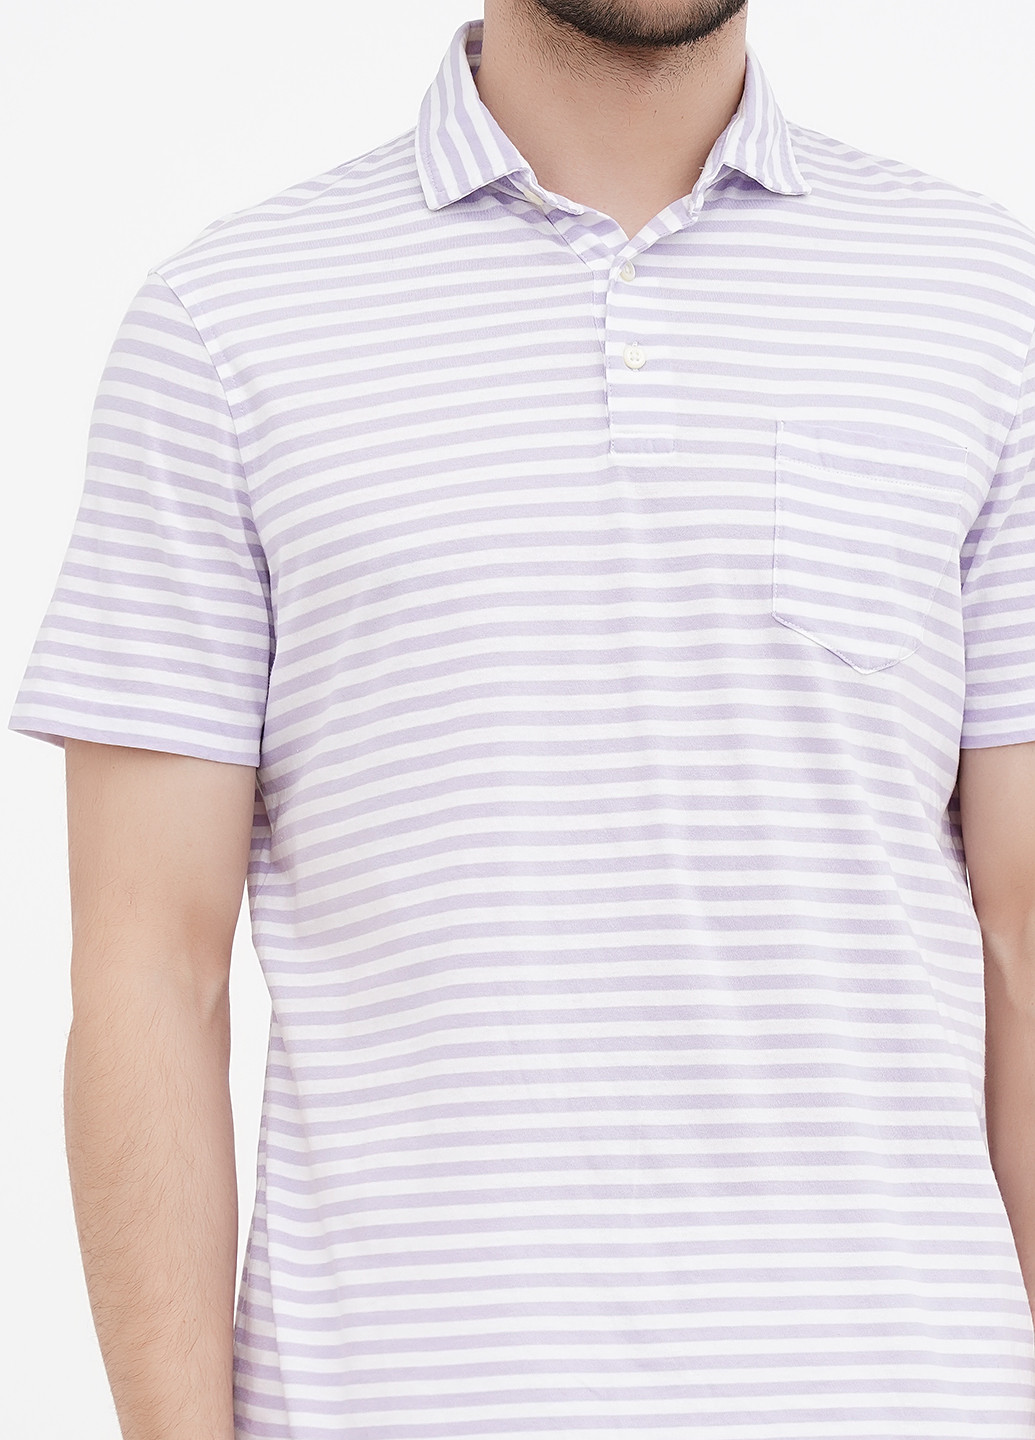 Белая футболка-поло для мужчин Ralph Lauren в полоску